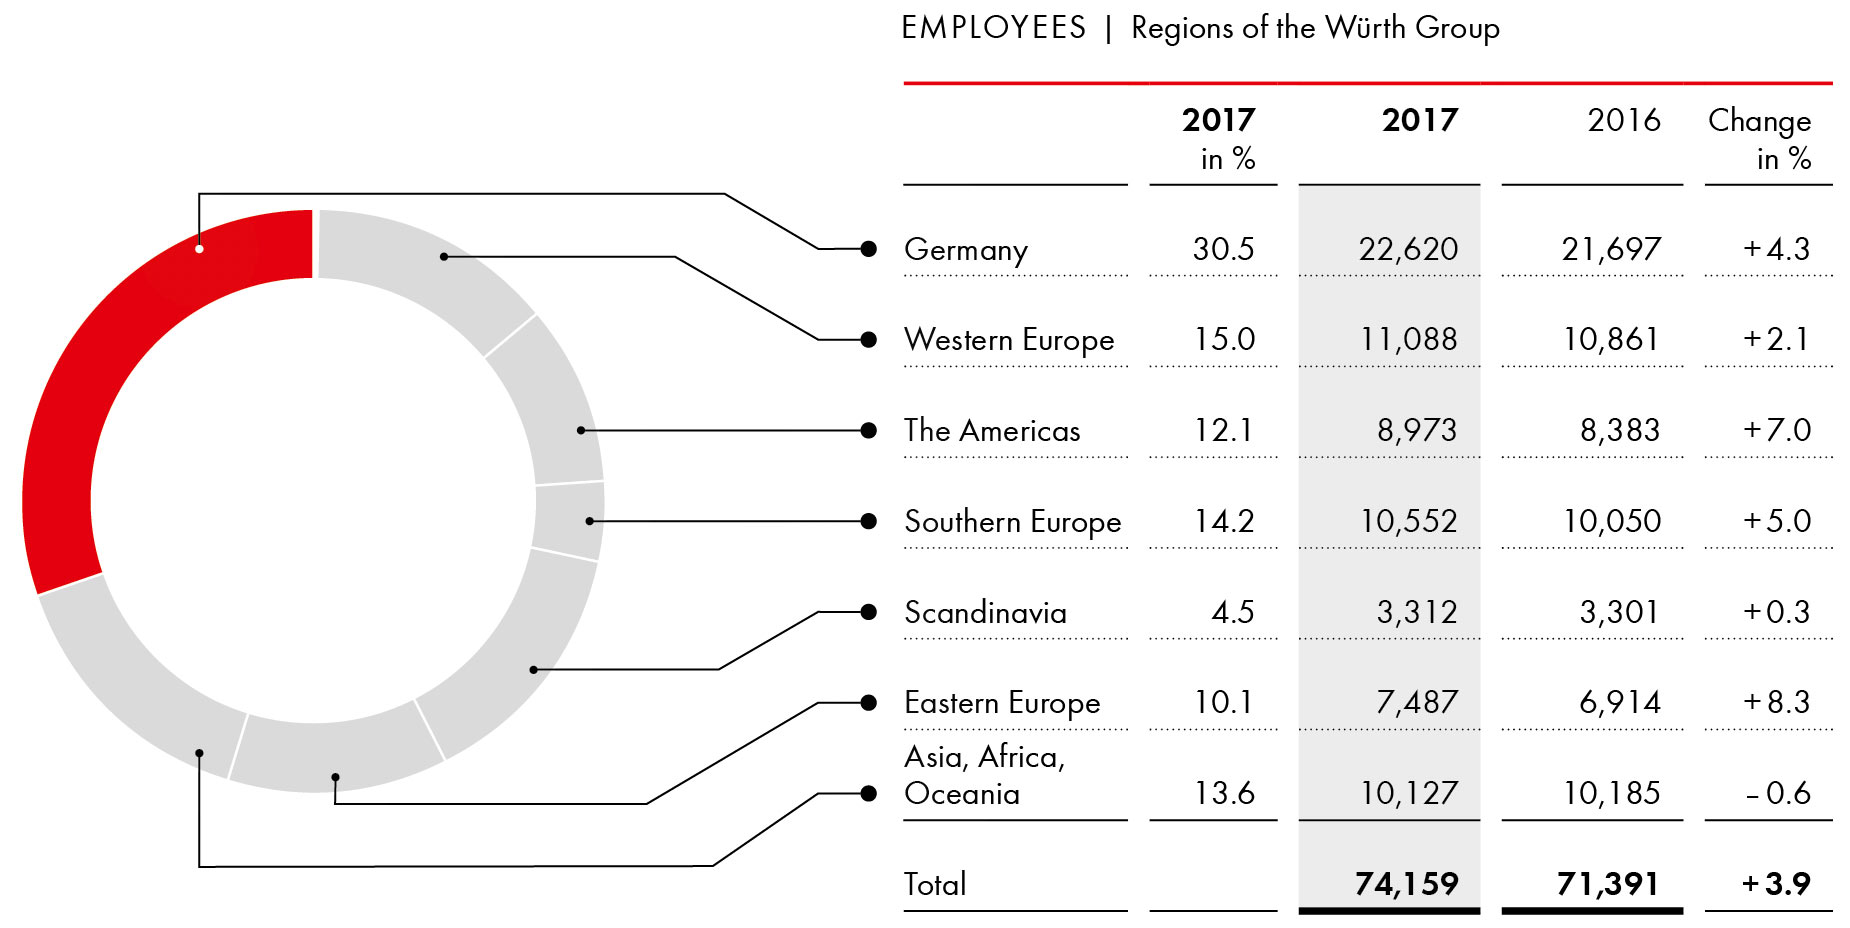 Employees by region 2017